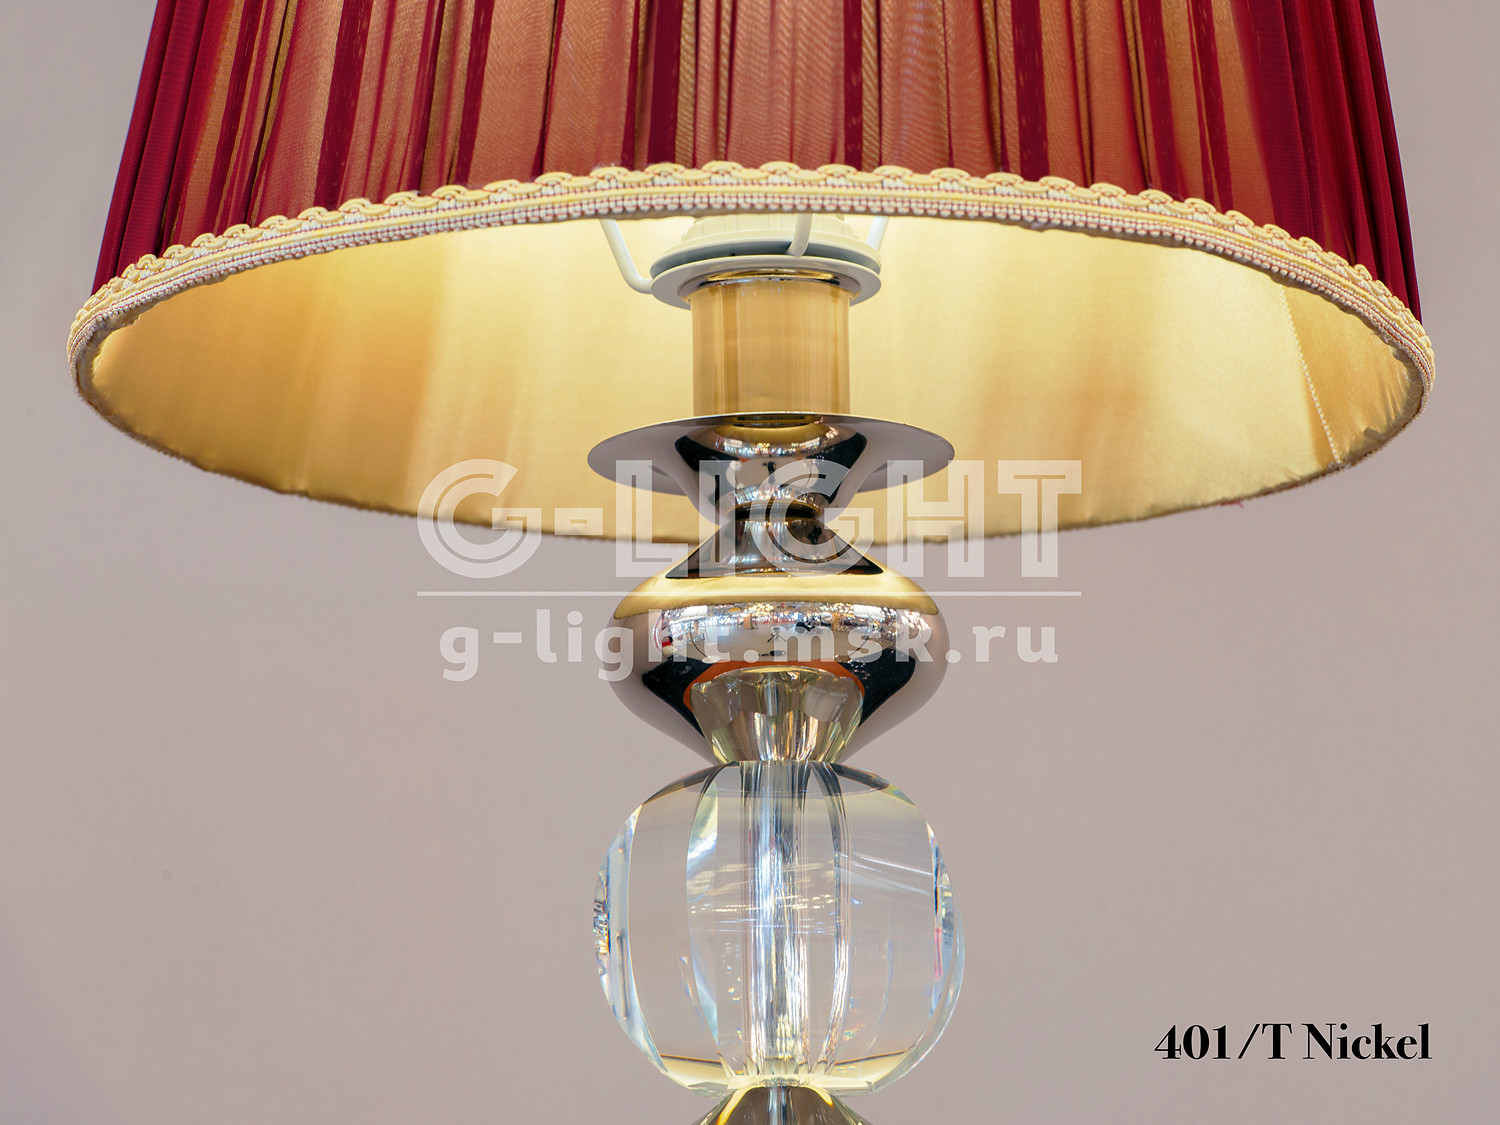 Настольная лампа 401/T Nickel - изображение 4